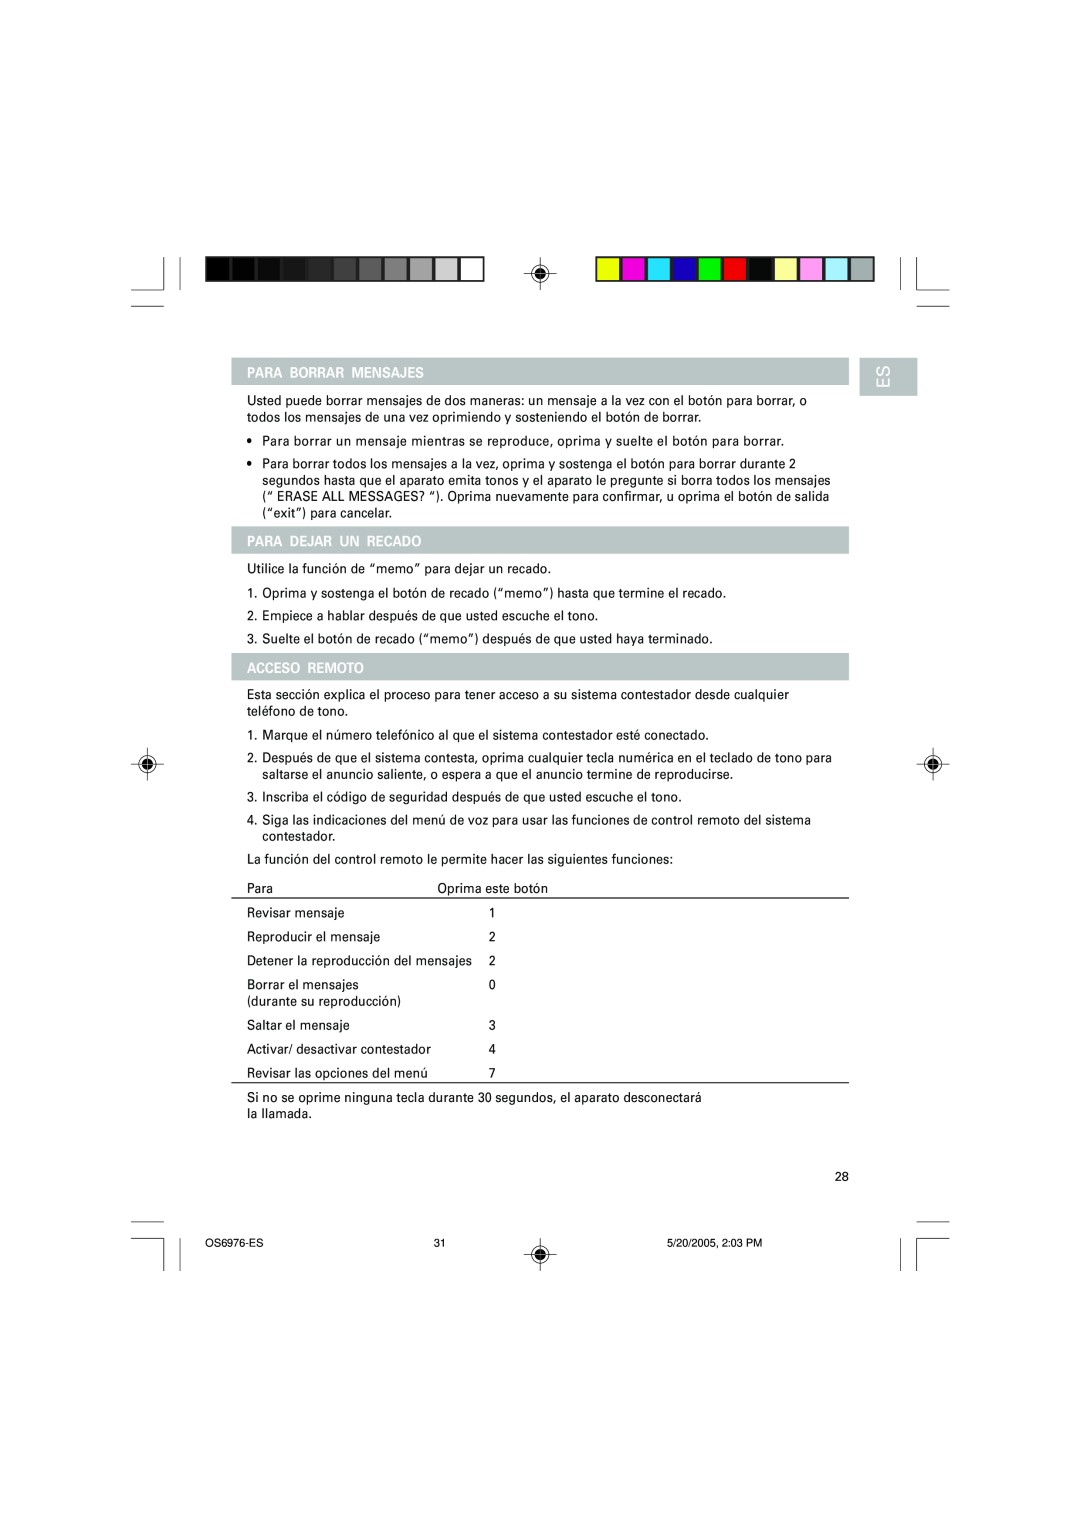 Oregon Scientific OS6976 user manual Para Borrar Mensajes, Para Dejar Un Recado, Acceso Remoto 